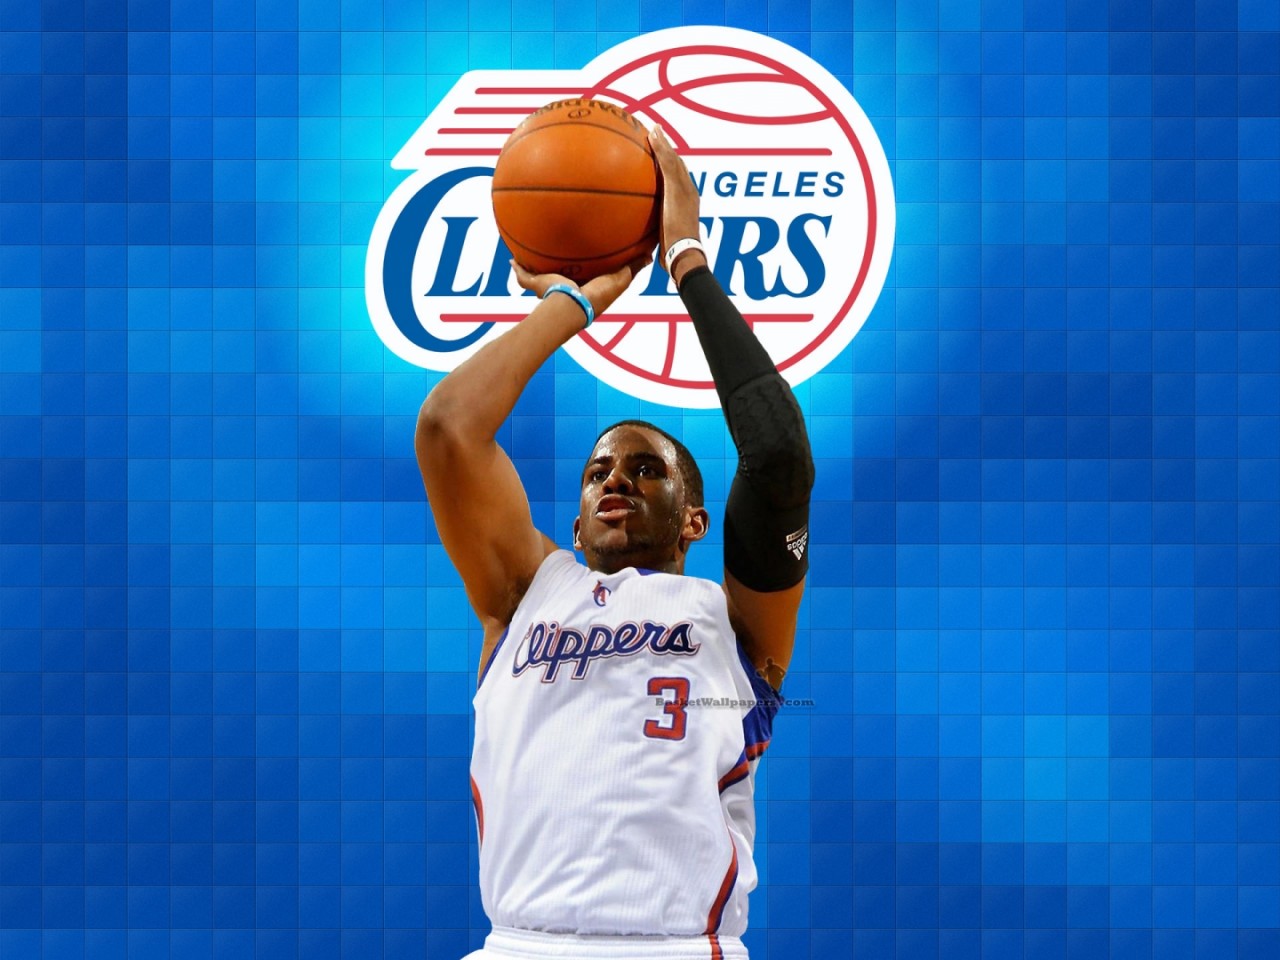 Chris Paul LA Clippers 2012 NBA Wallpaper - High Definition, High  Resolution HD Wallpapers : High Definition, High Resolution HD Wallpapers